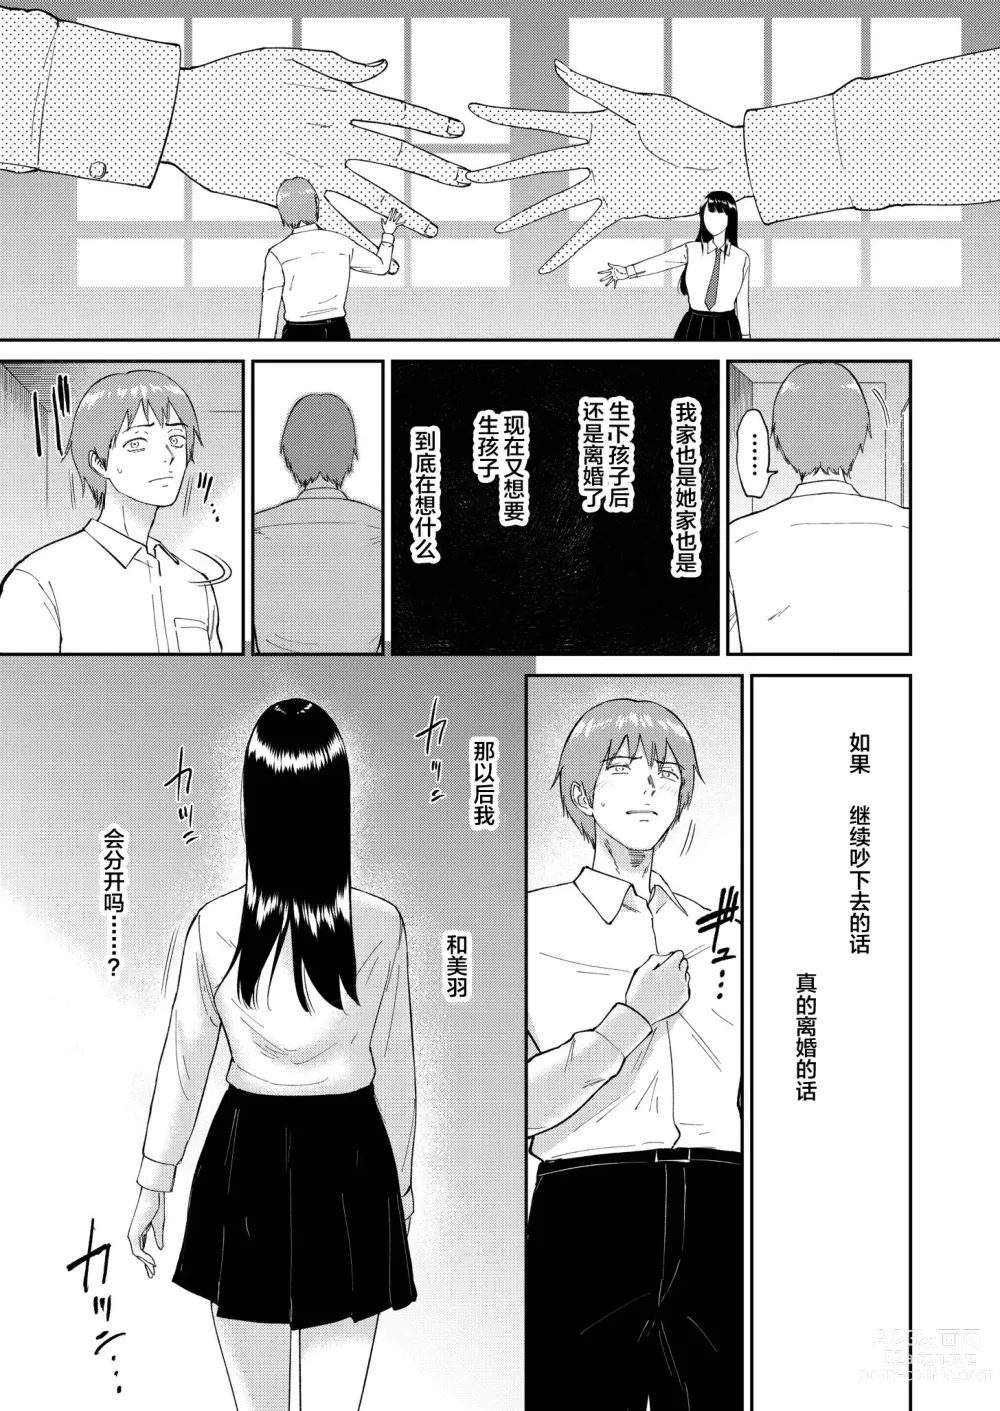 Page 7 of doujinshi Iinarikko 5